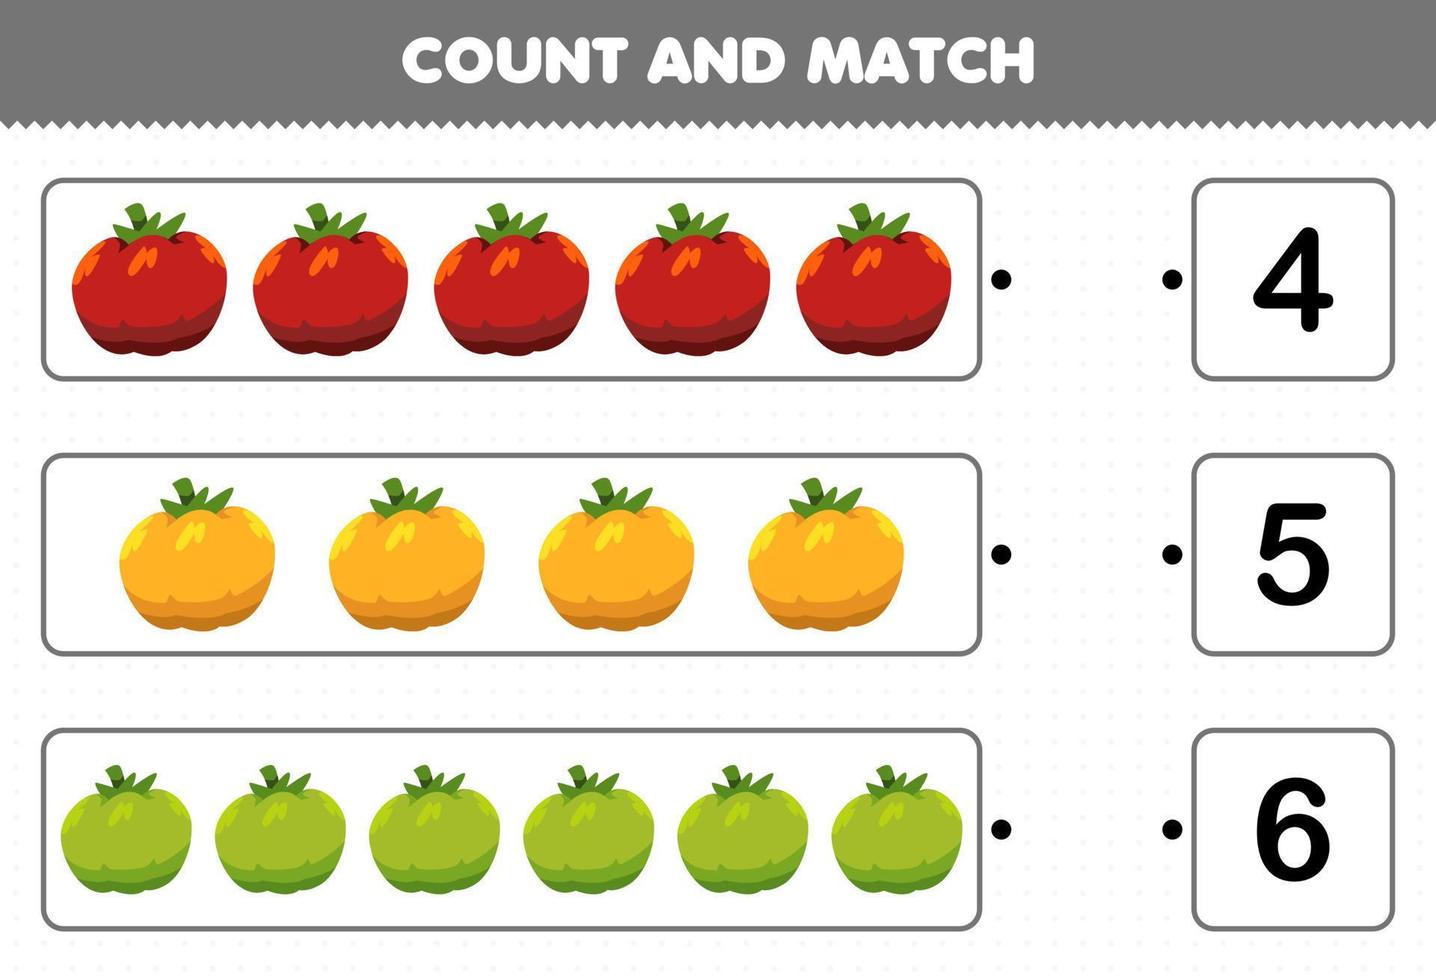 juego educativo para niños contar y combinar contar el número de verduras de dibujos animados tomate y combinar con los números correctos hoja de trabajo imprimible vector